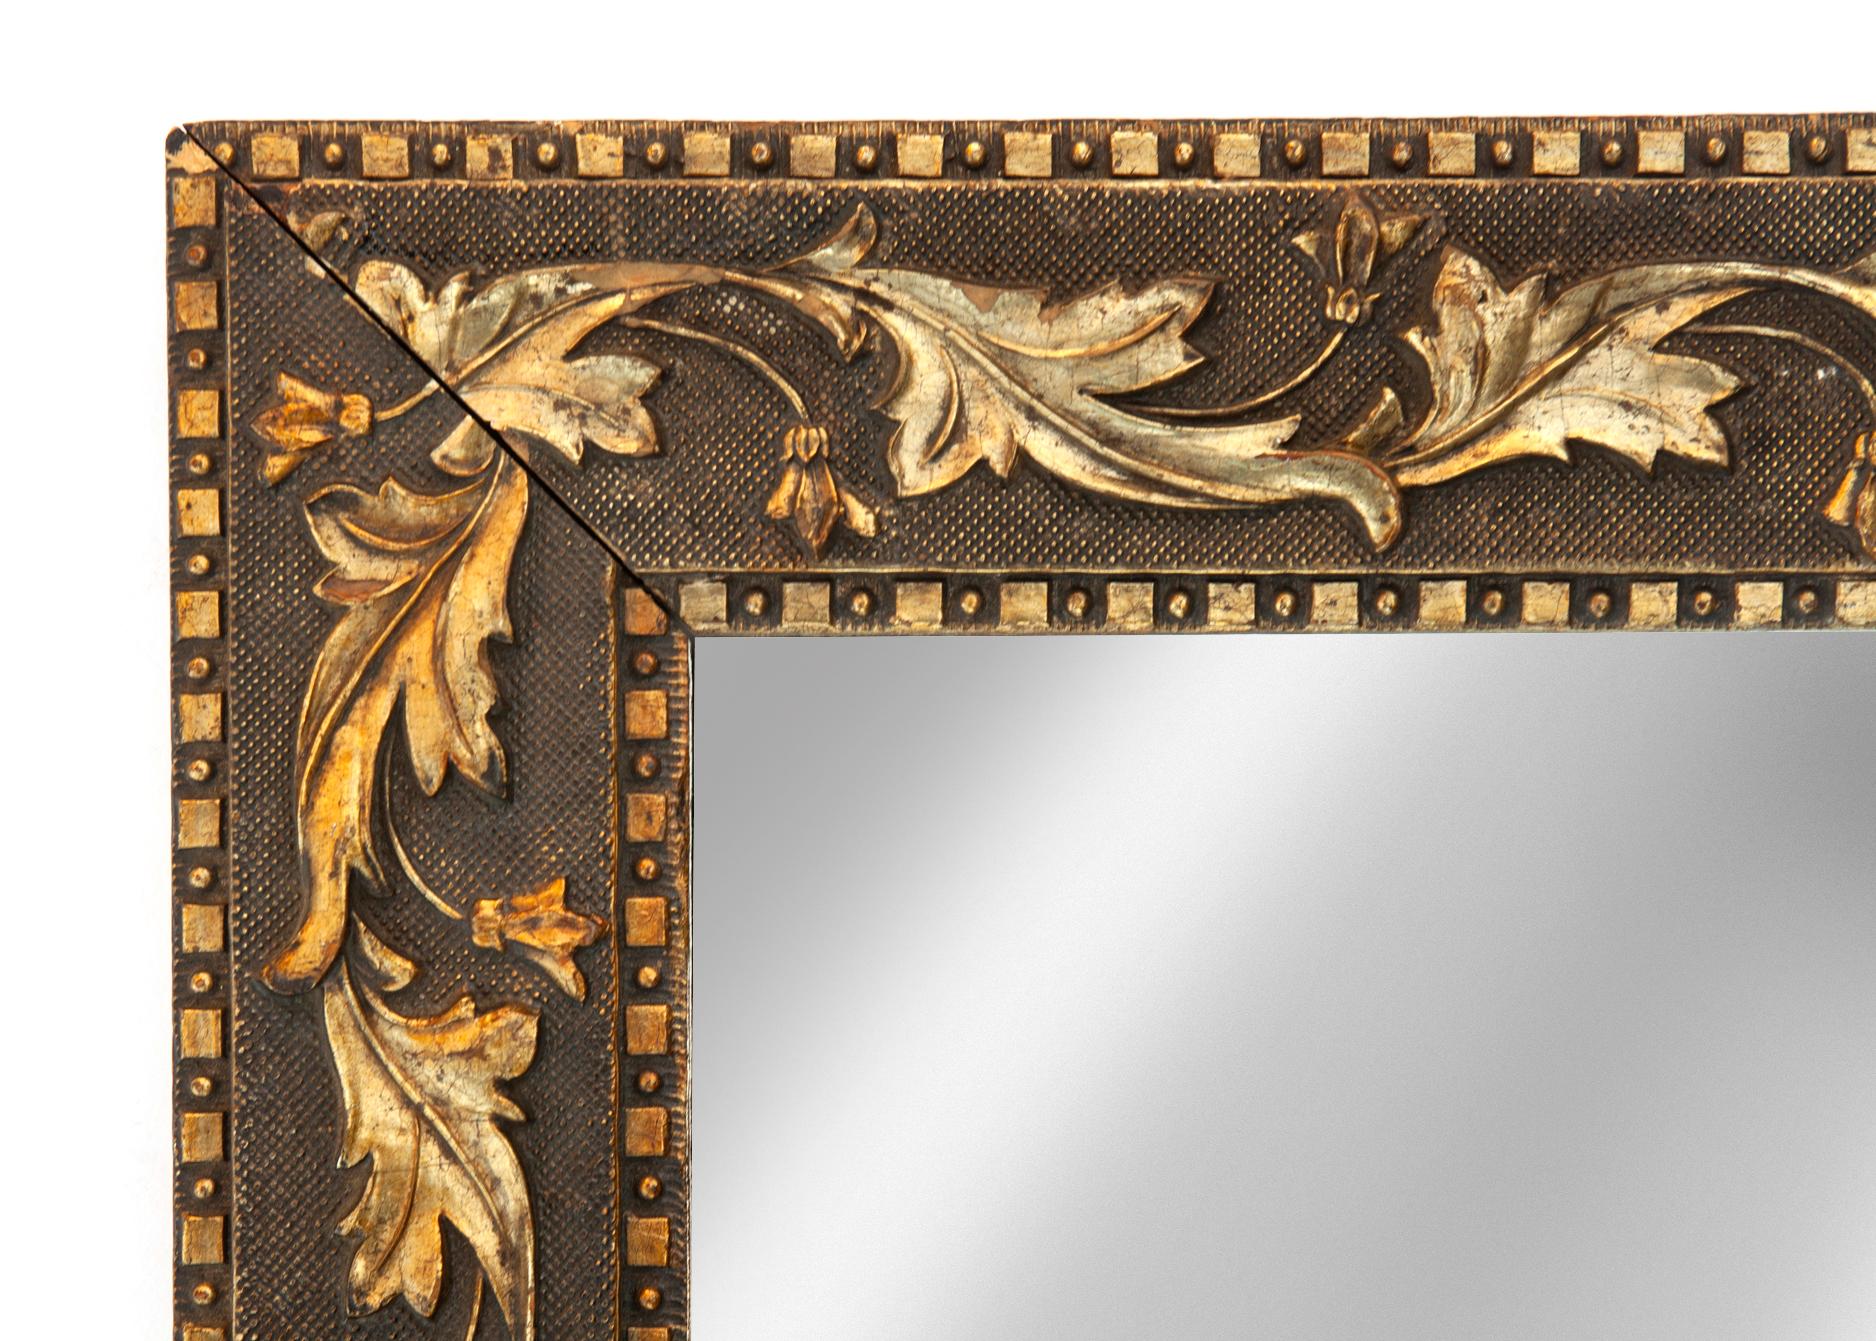 Ce petit miroir est orné de feuilles tourbillonnantes en or bruni sur un fond texturé en bronze foncé. La bordure extérieure et intérieure est composée d'un motif géométrique de petits carrés et de points. 
Ce miroir est une pièce d'accentuation